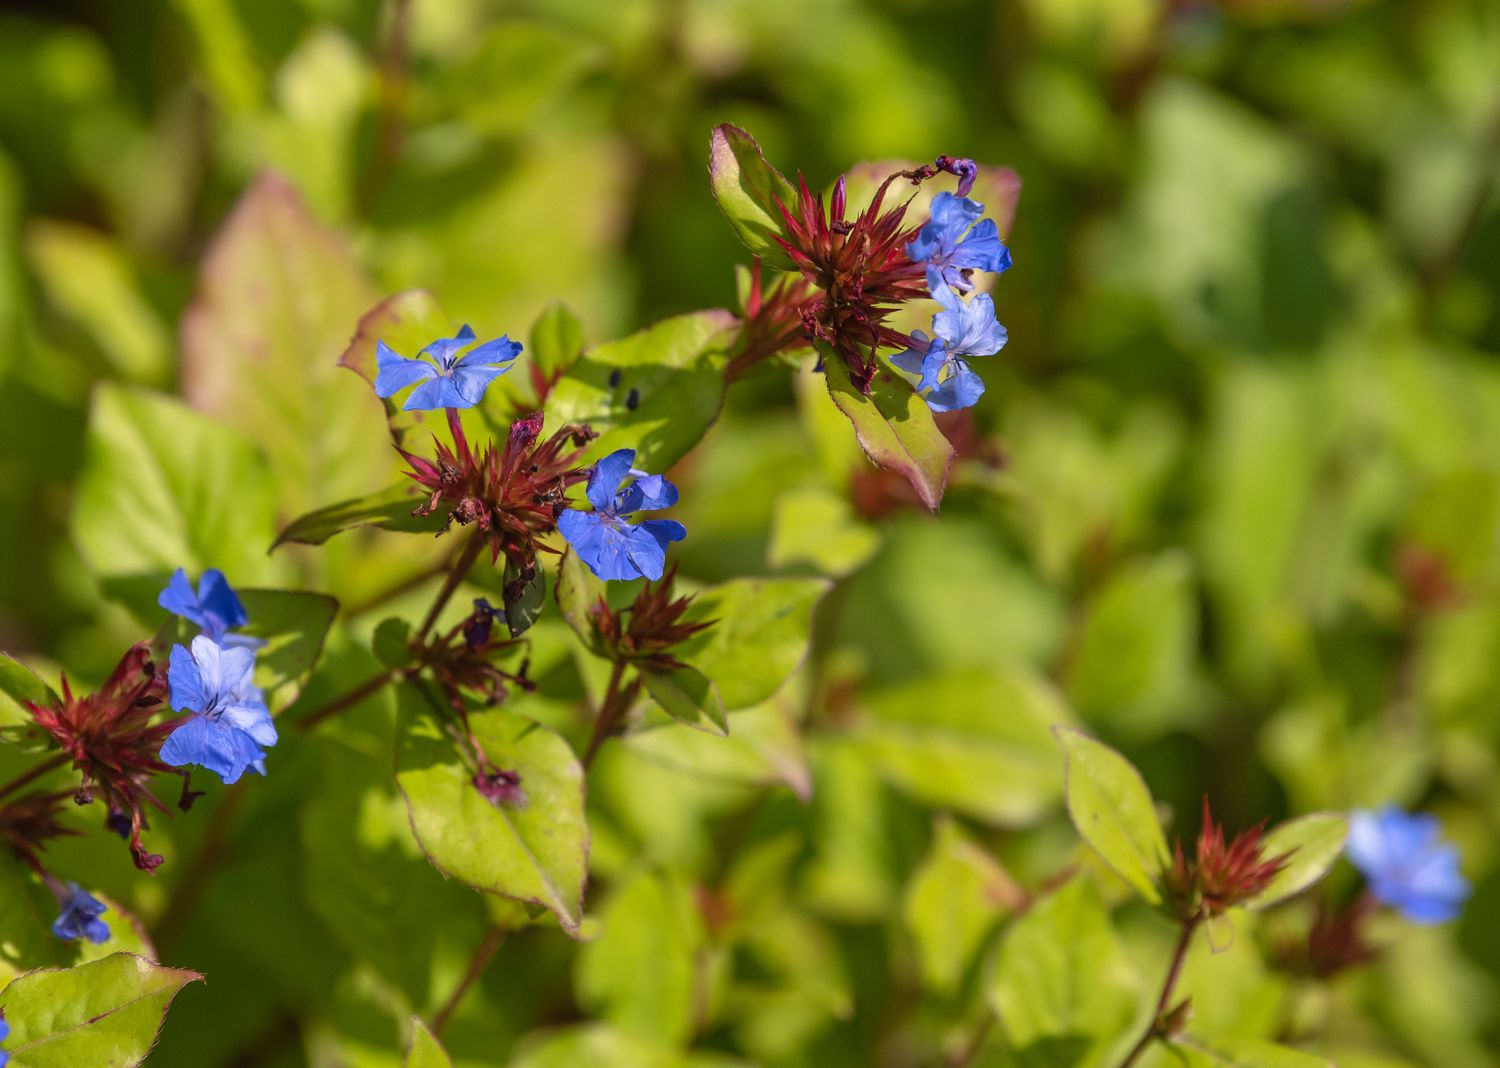 Bleikrautpflanze mit leuchtend blauen Blüten an roten Stängeln und gelb-grünen Blättern